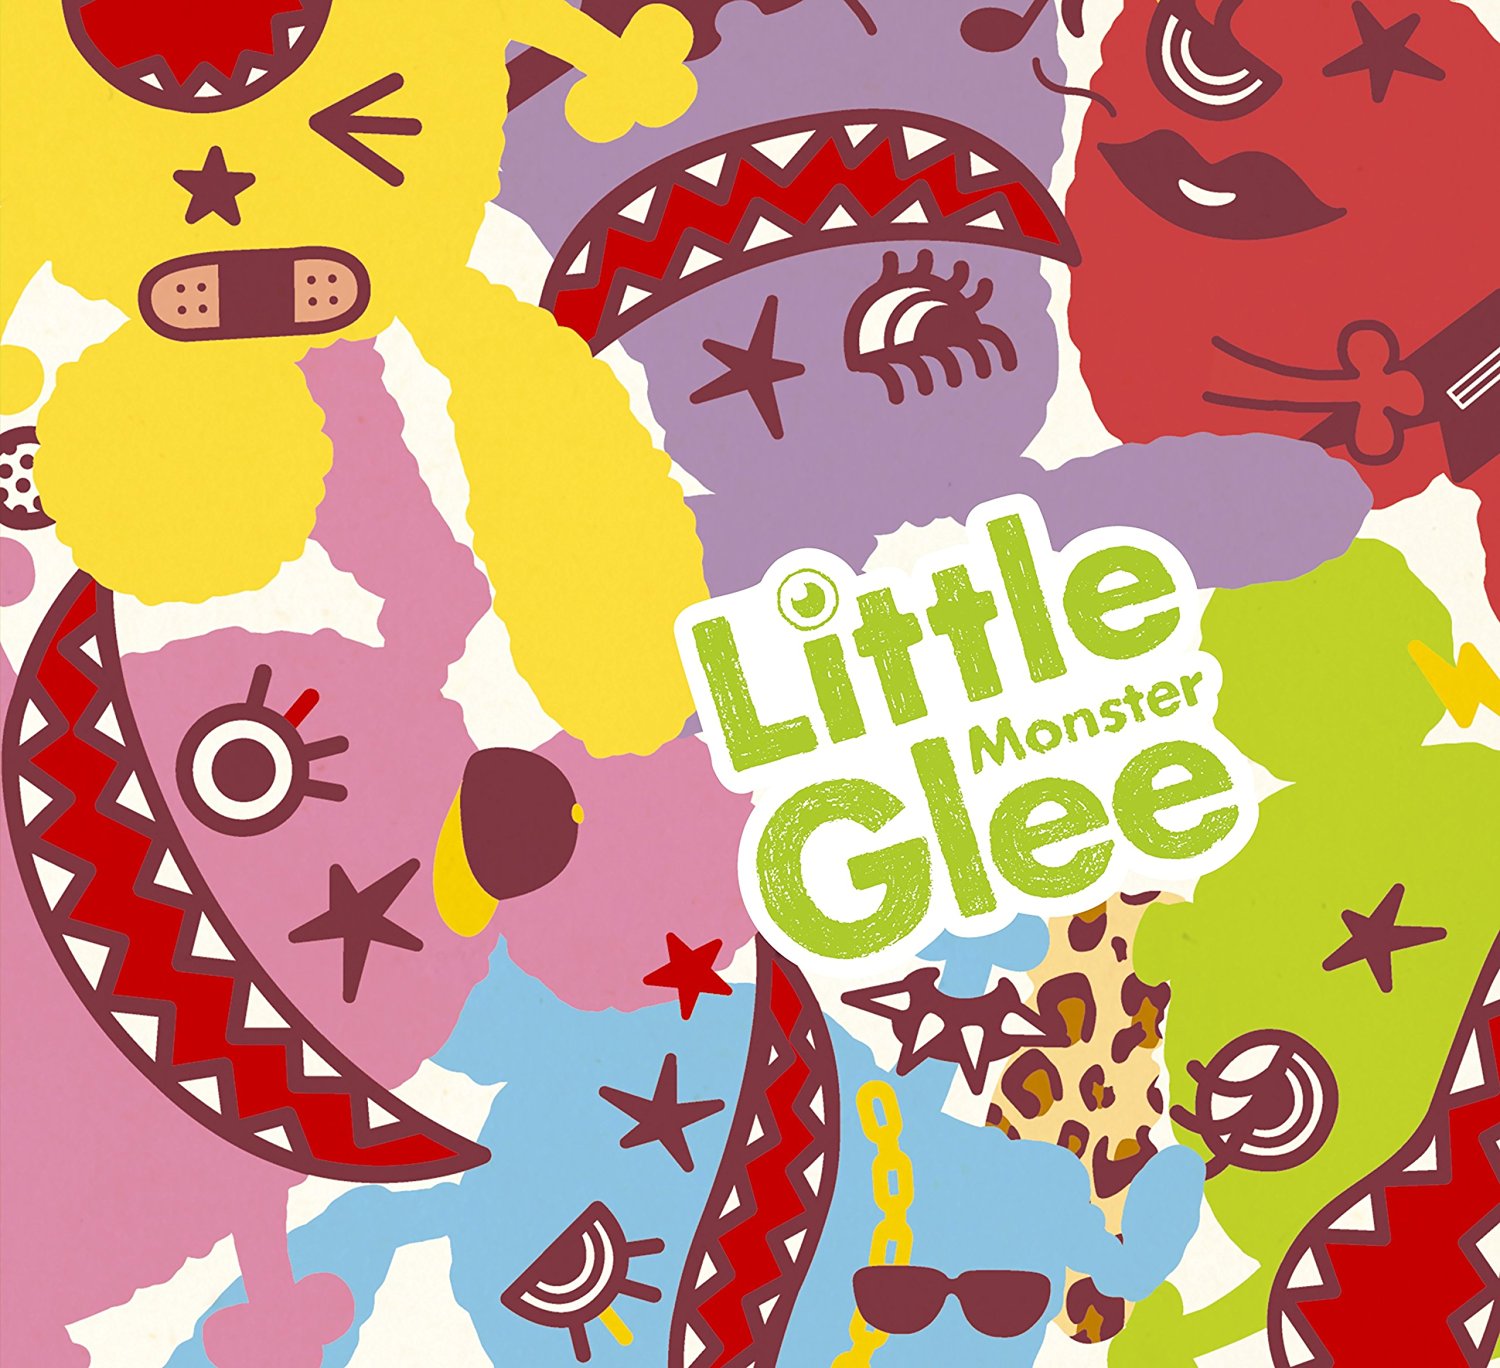 Little Glee Monster Live in 武道館〜はじまりのうた〜